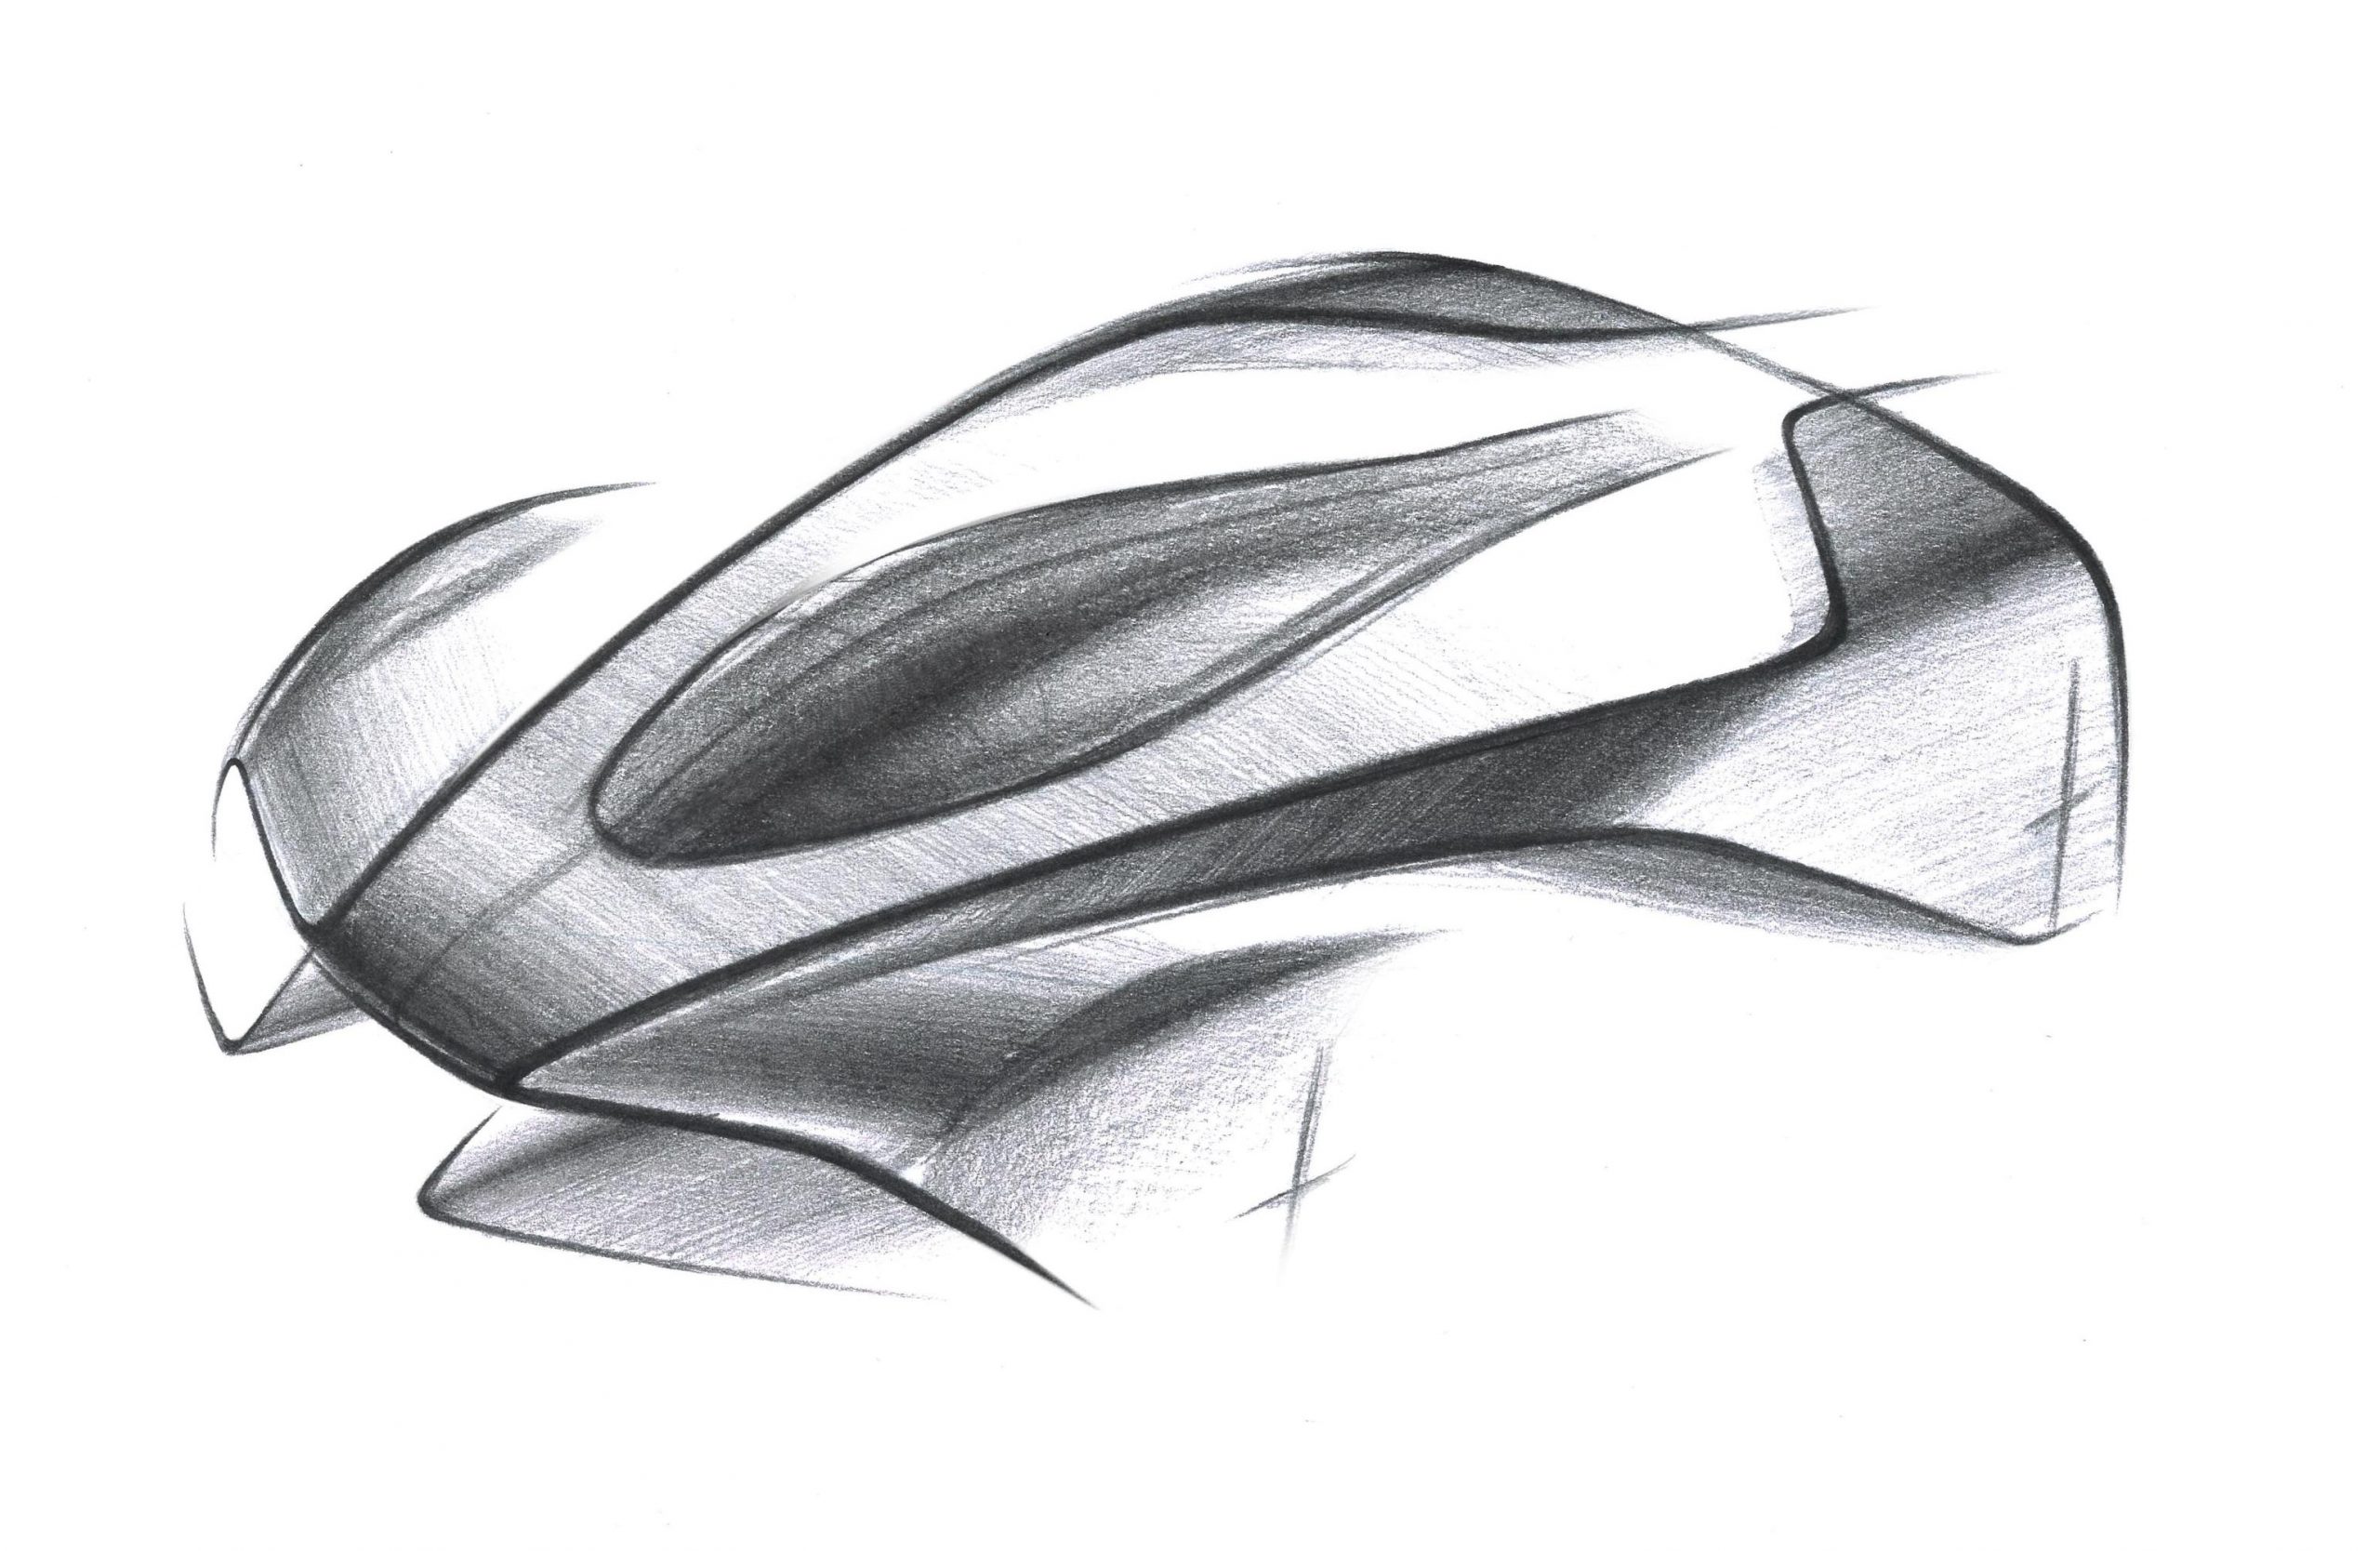 Aston Martin Project 003 confirmed as 3rd hypercar